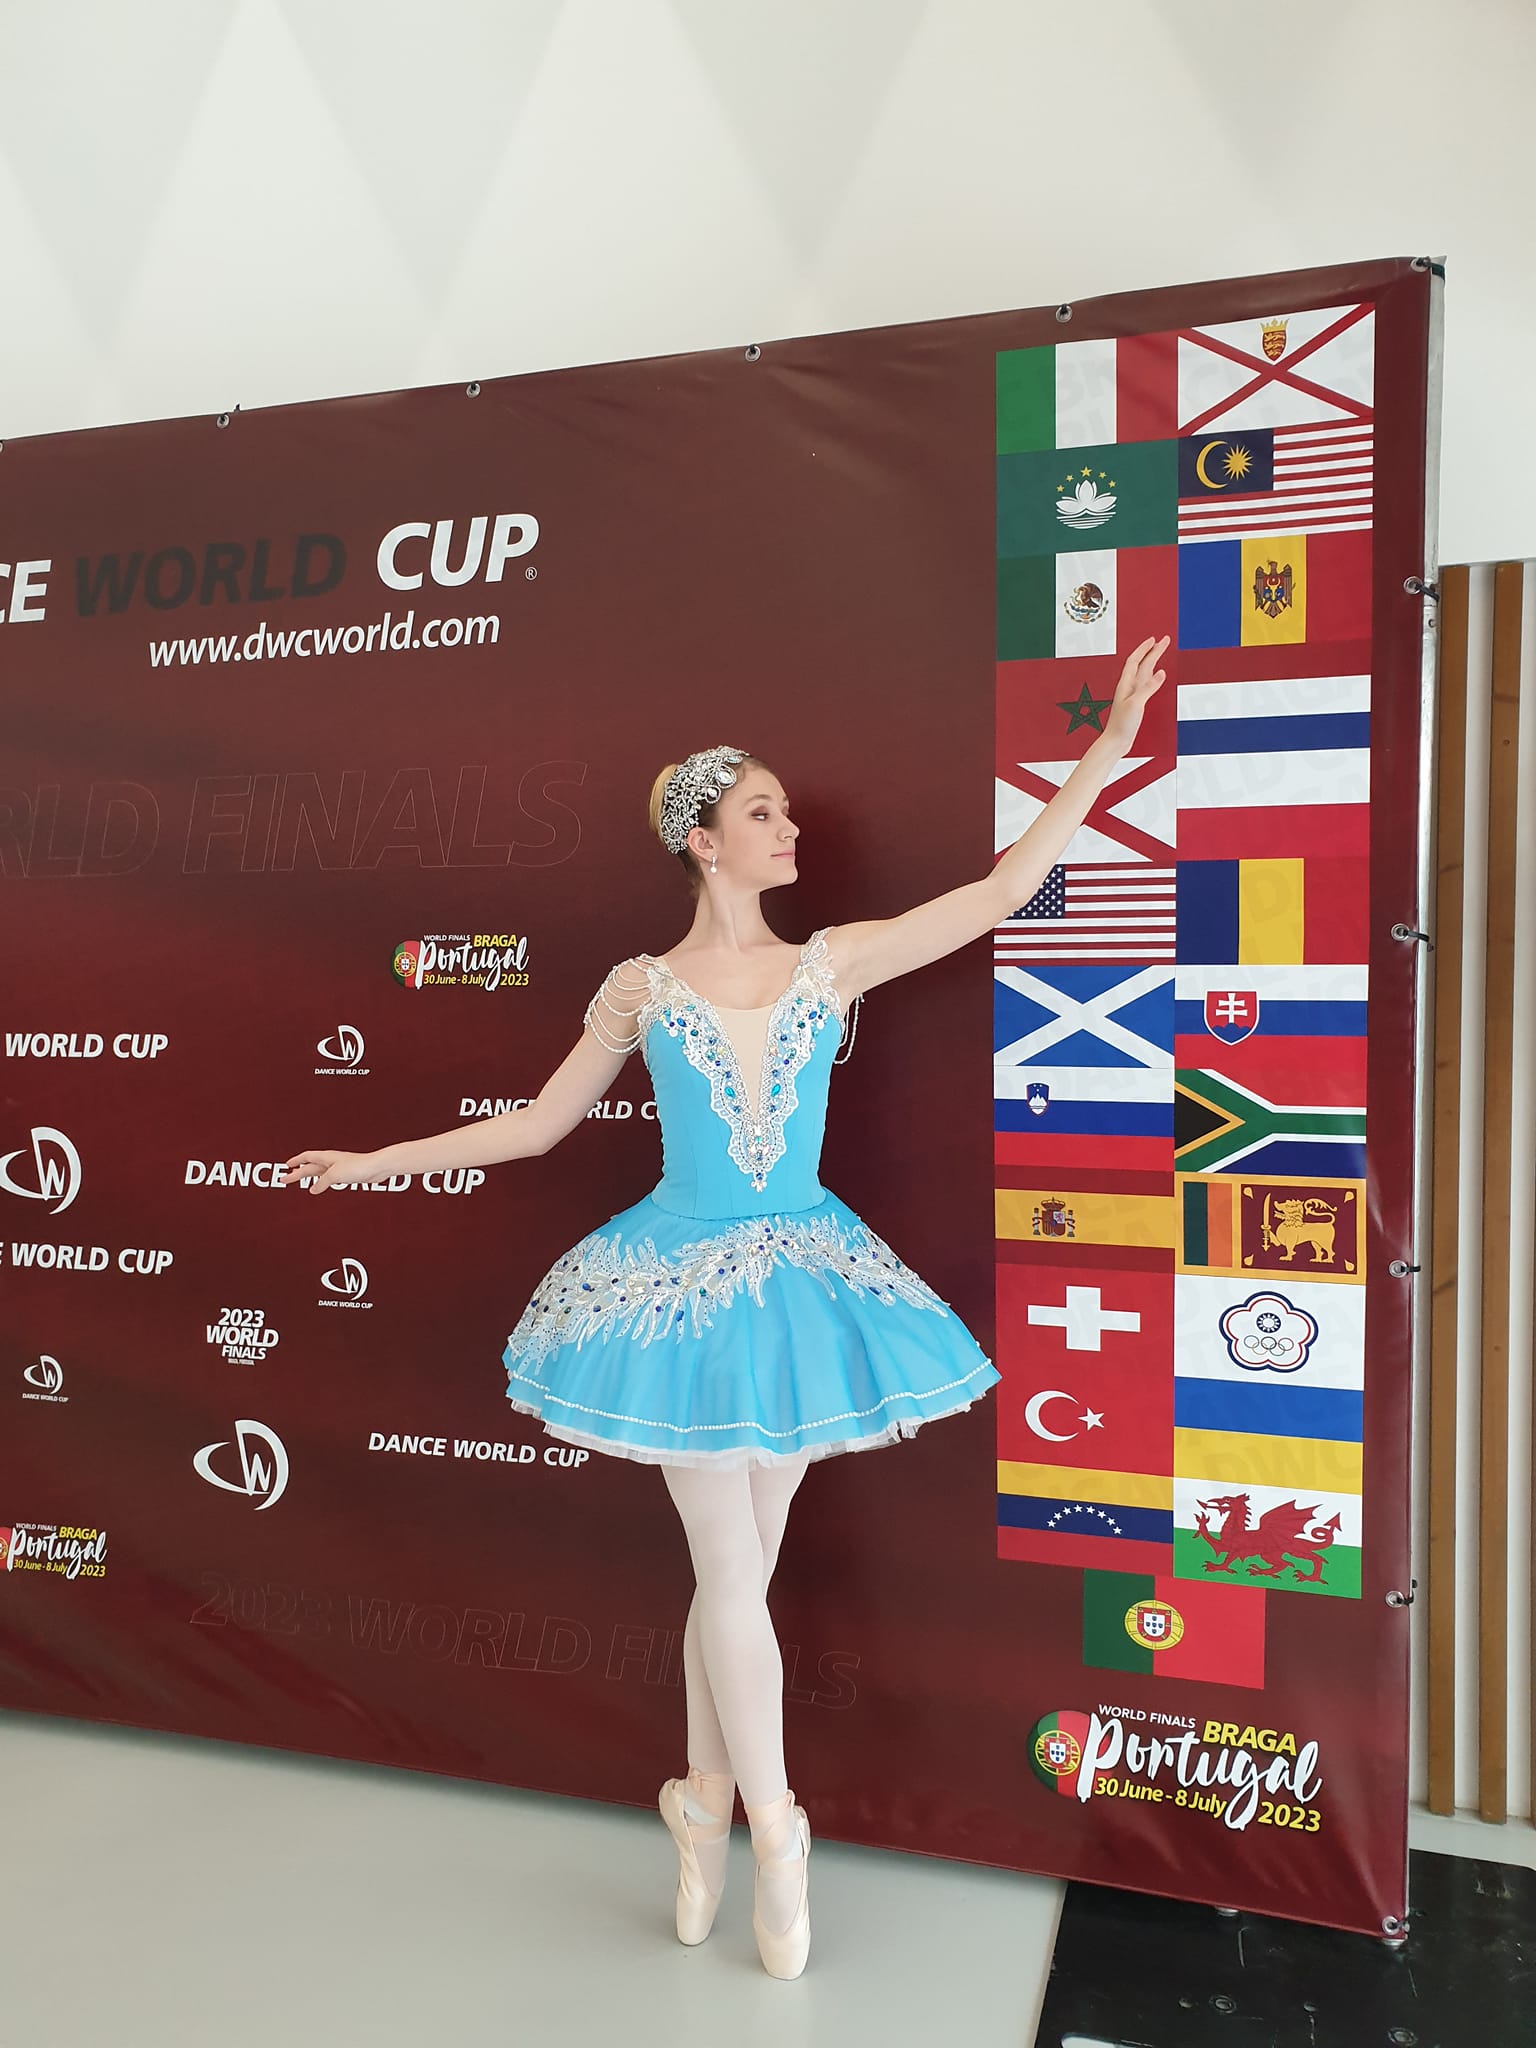 Балерина из Молдовы — в финале Кубка мира по танцам. Она в десятке лучших танцоров мира